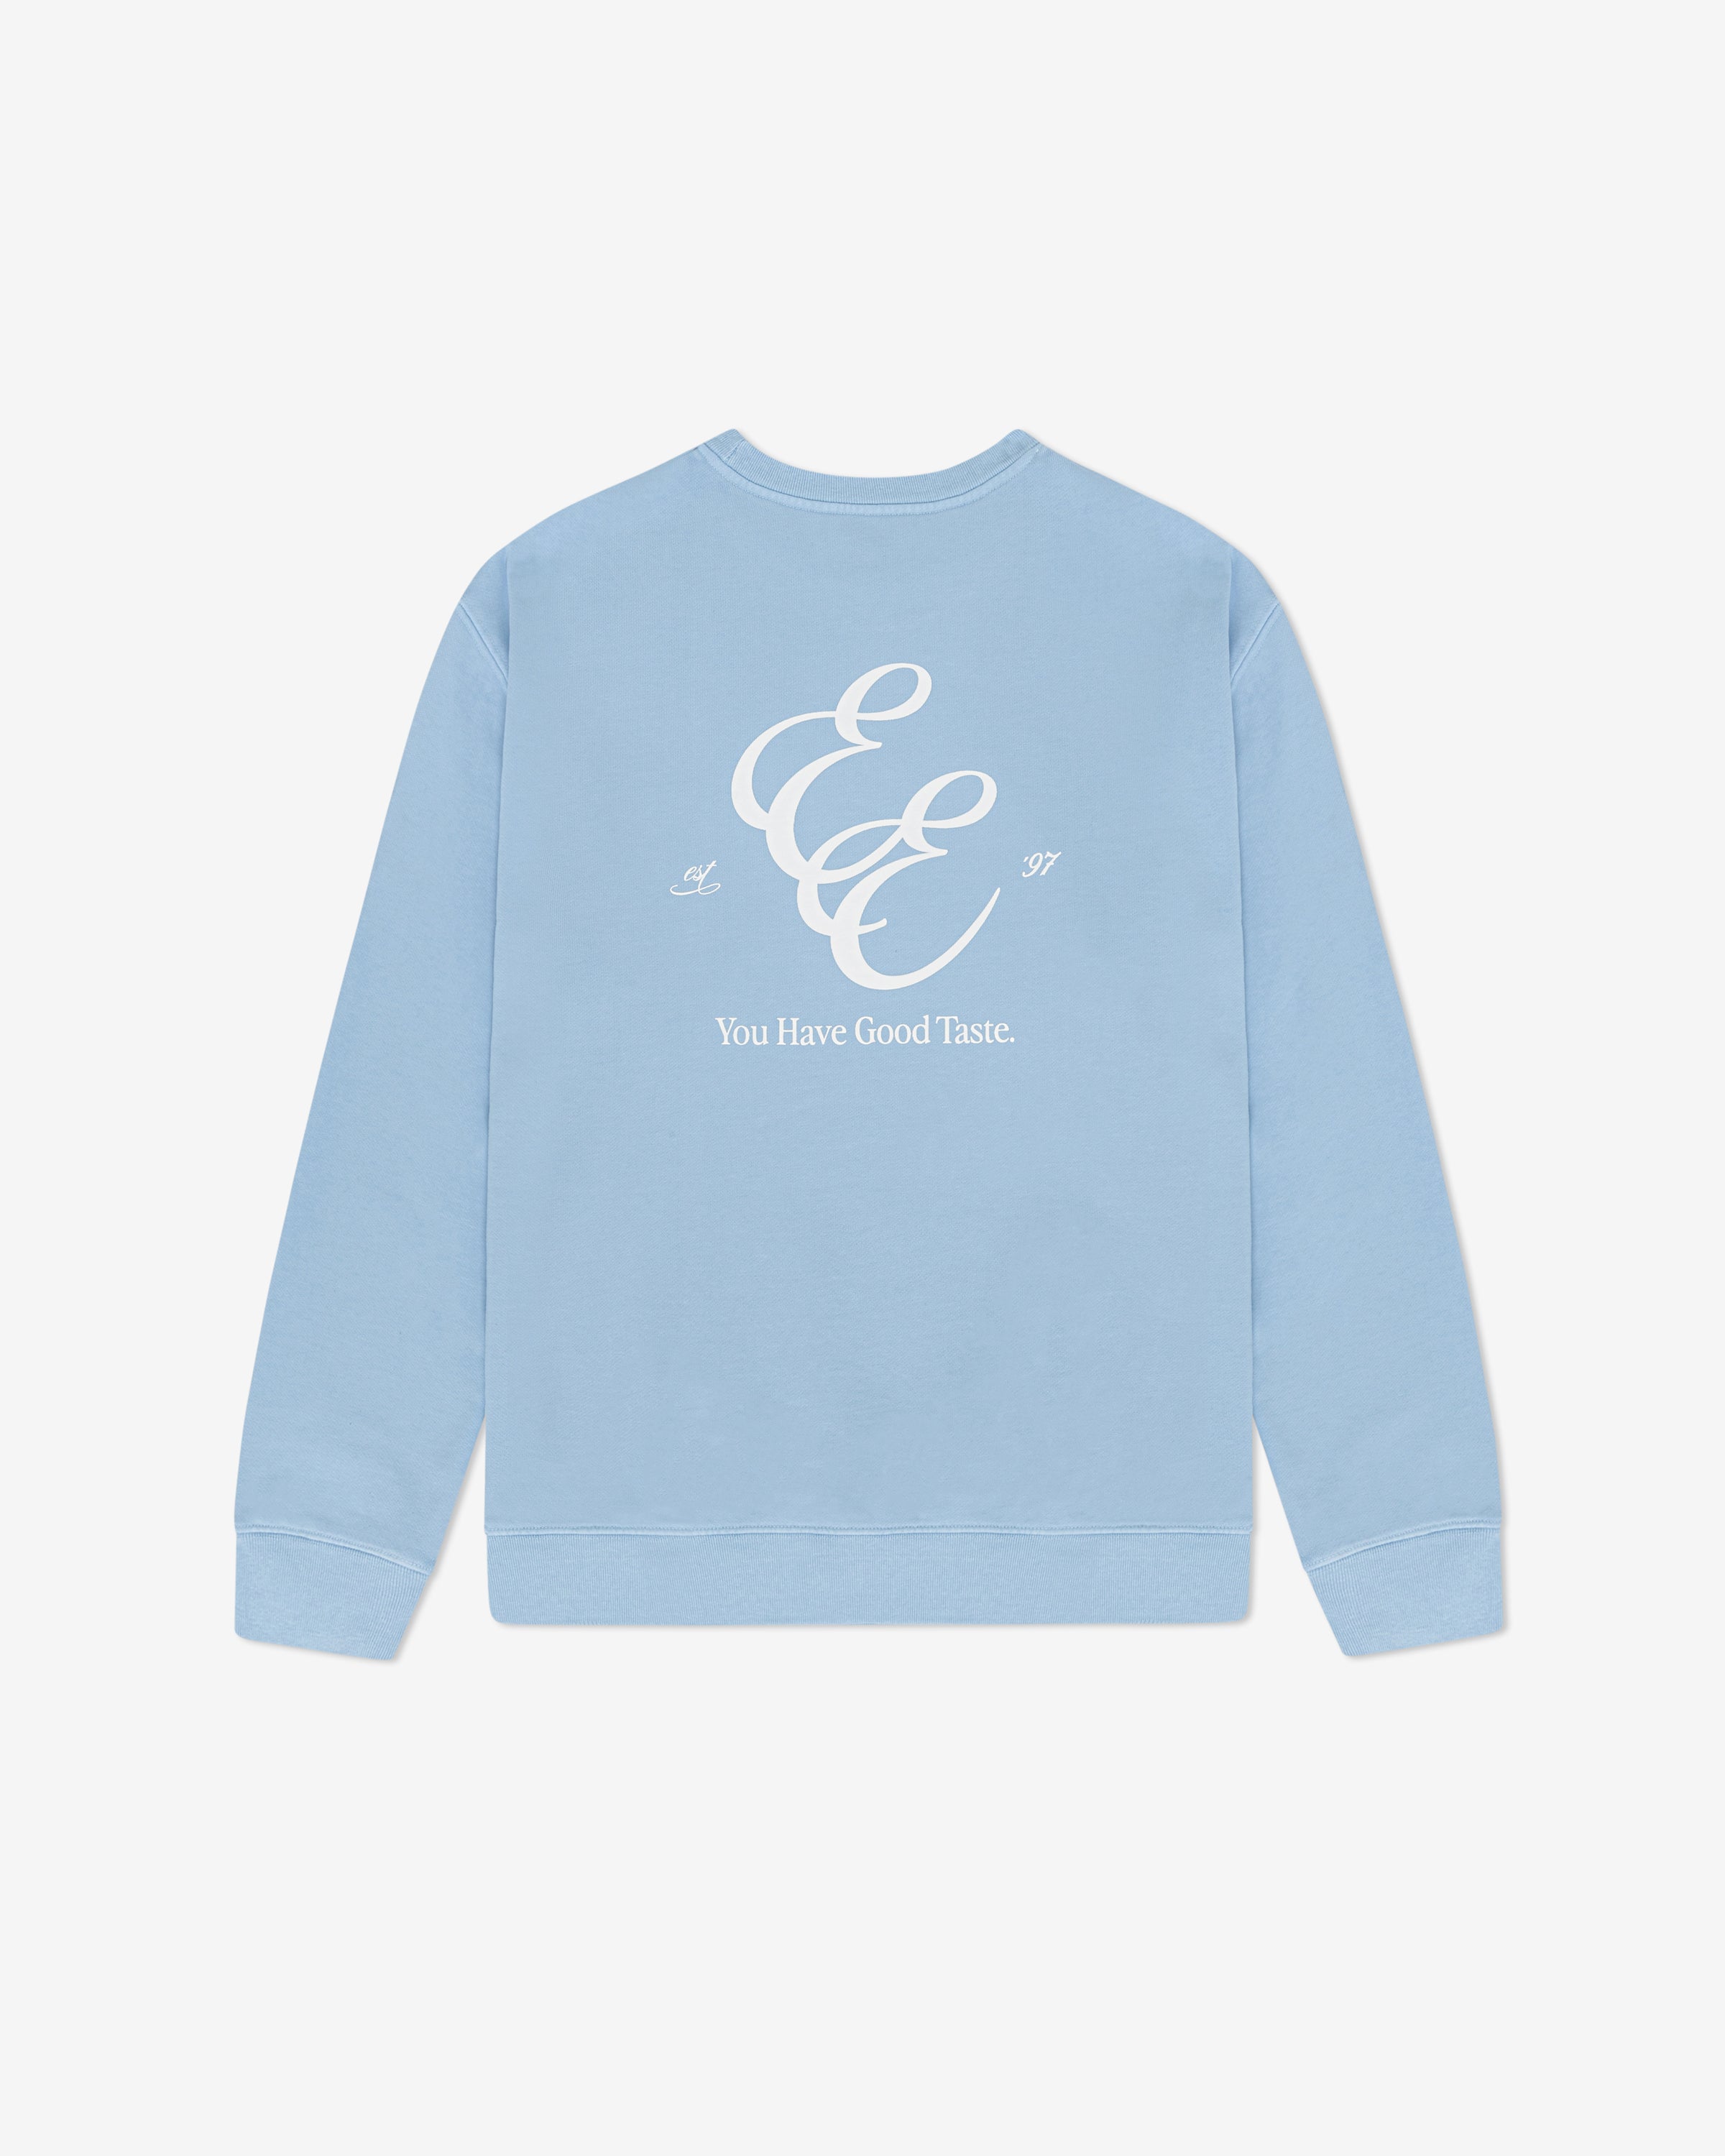 '97 Crewneck Sweatshirt